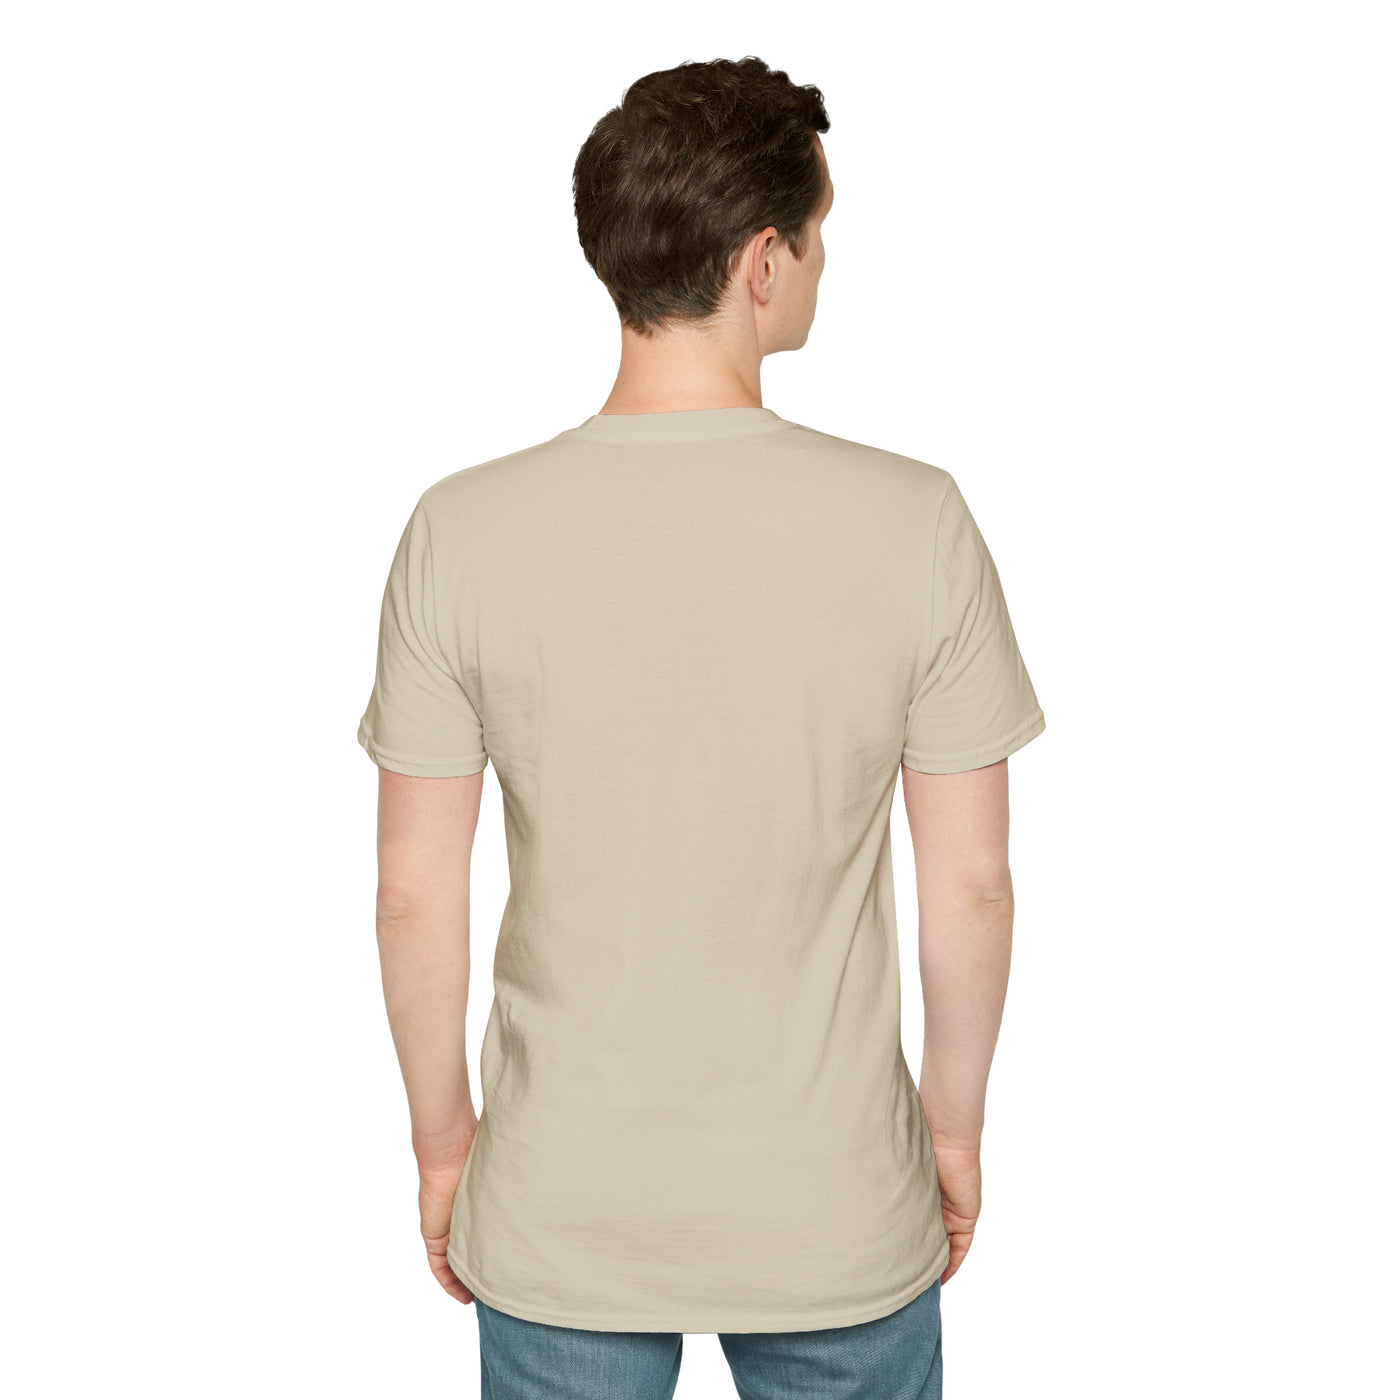 Wyoming Retro T-Shirt